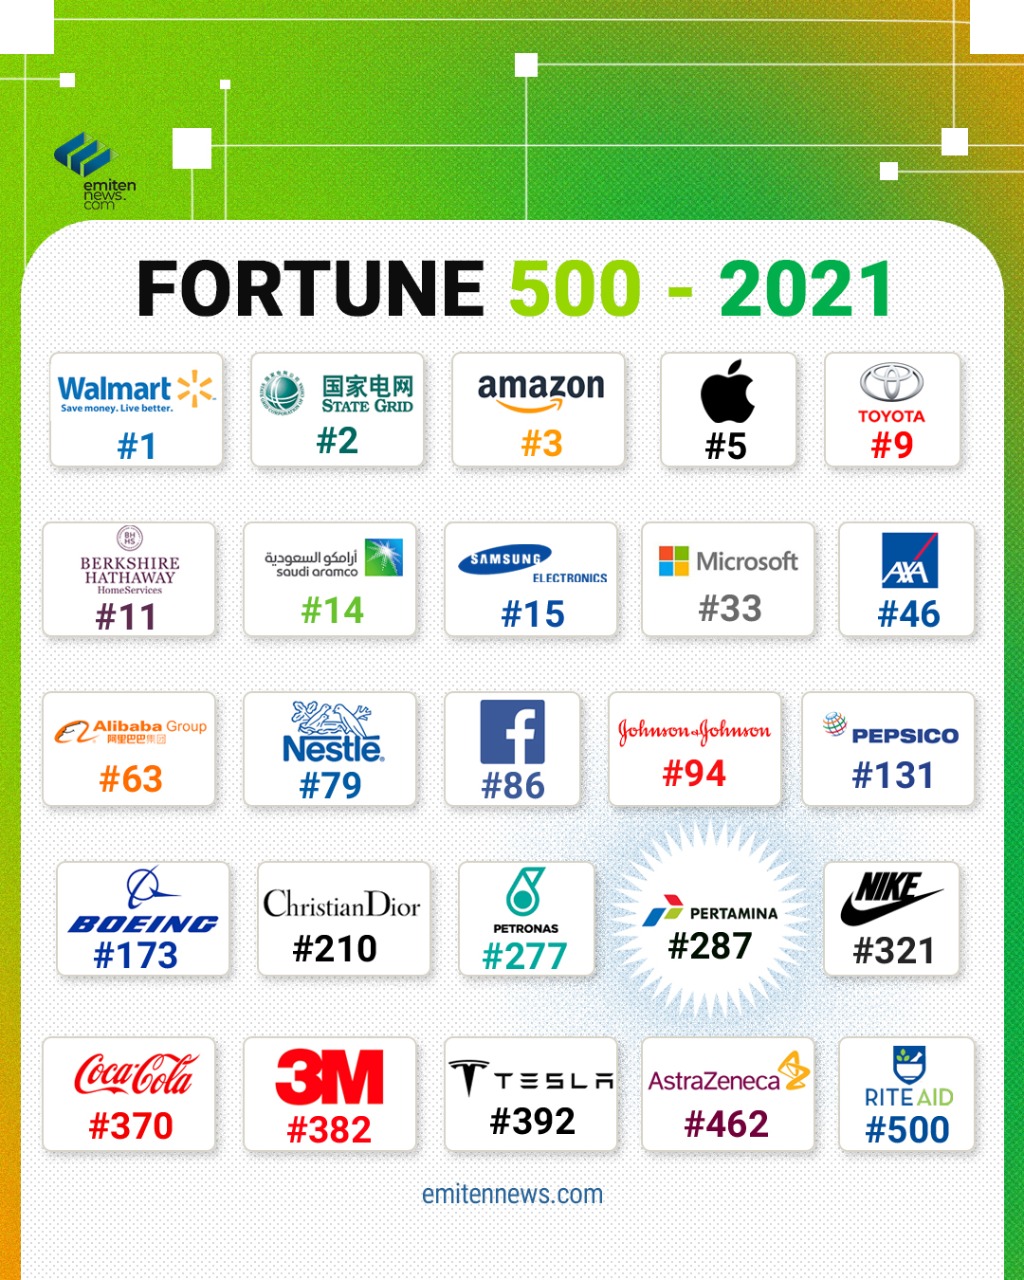 FORTUNE 500 - 2021